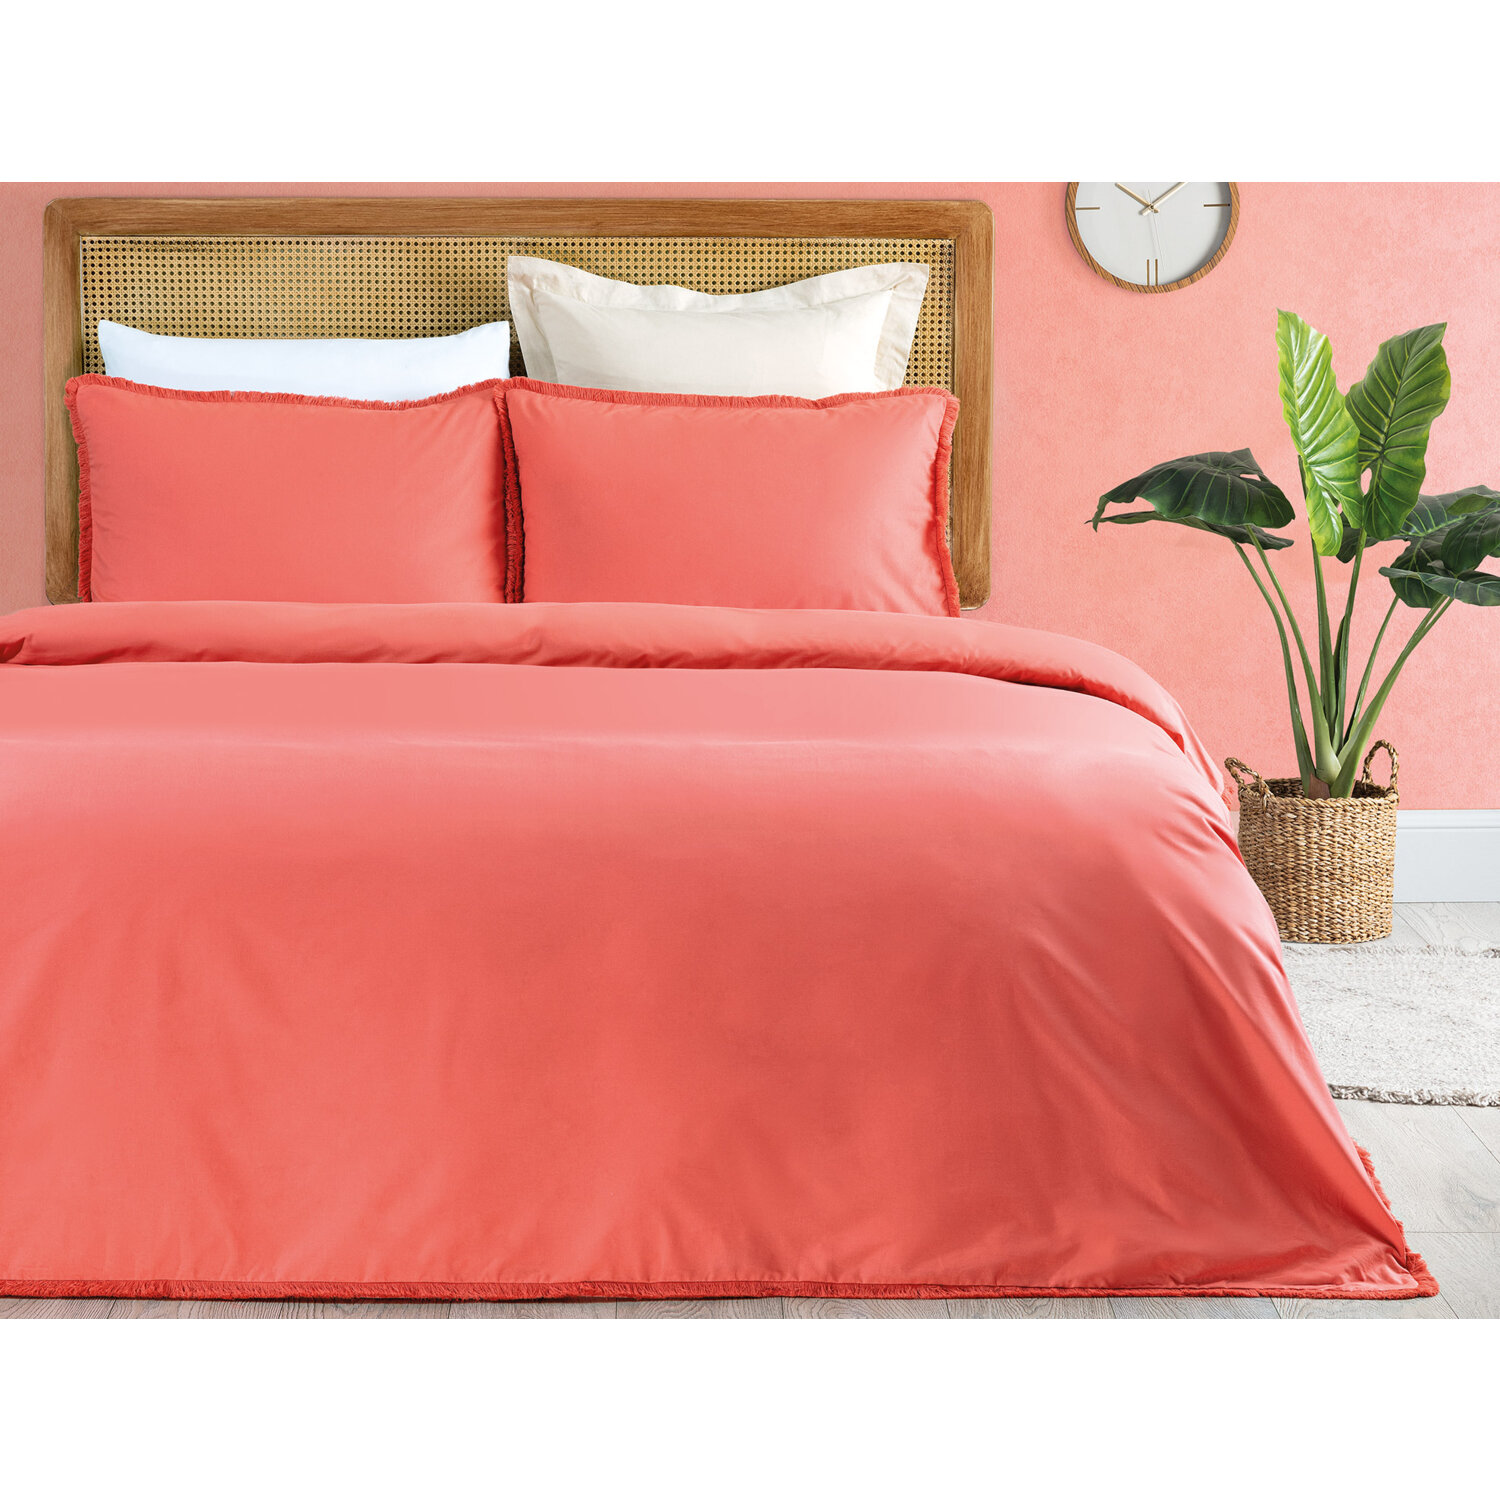 Комплект постельного белья с кисточками размера King Size Madame Coco Sona цена и фото